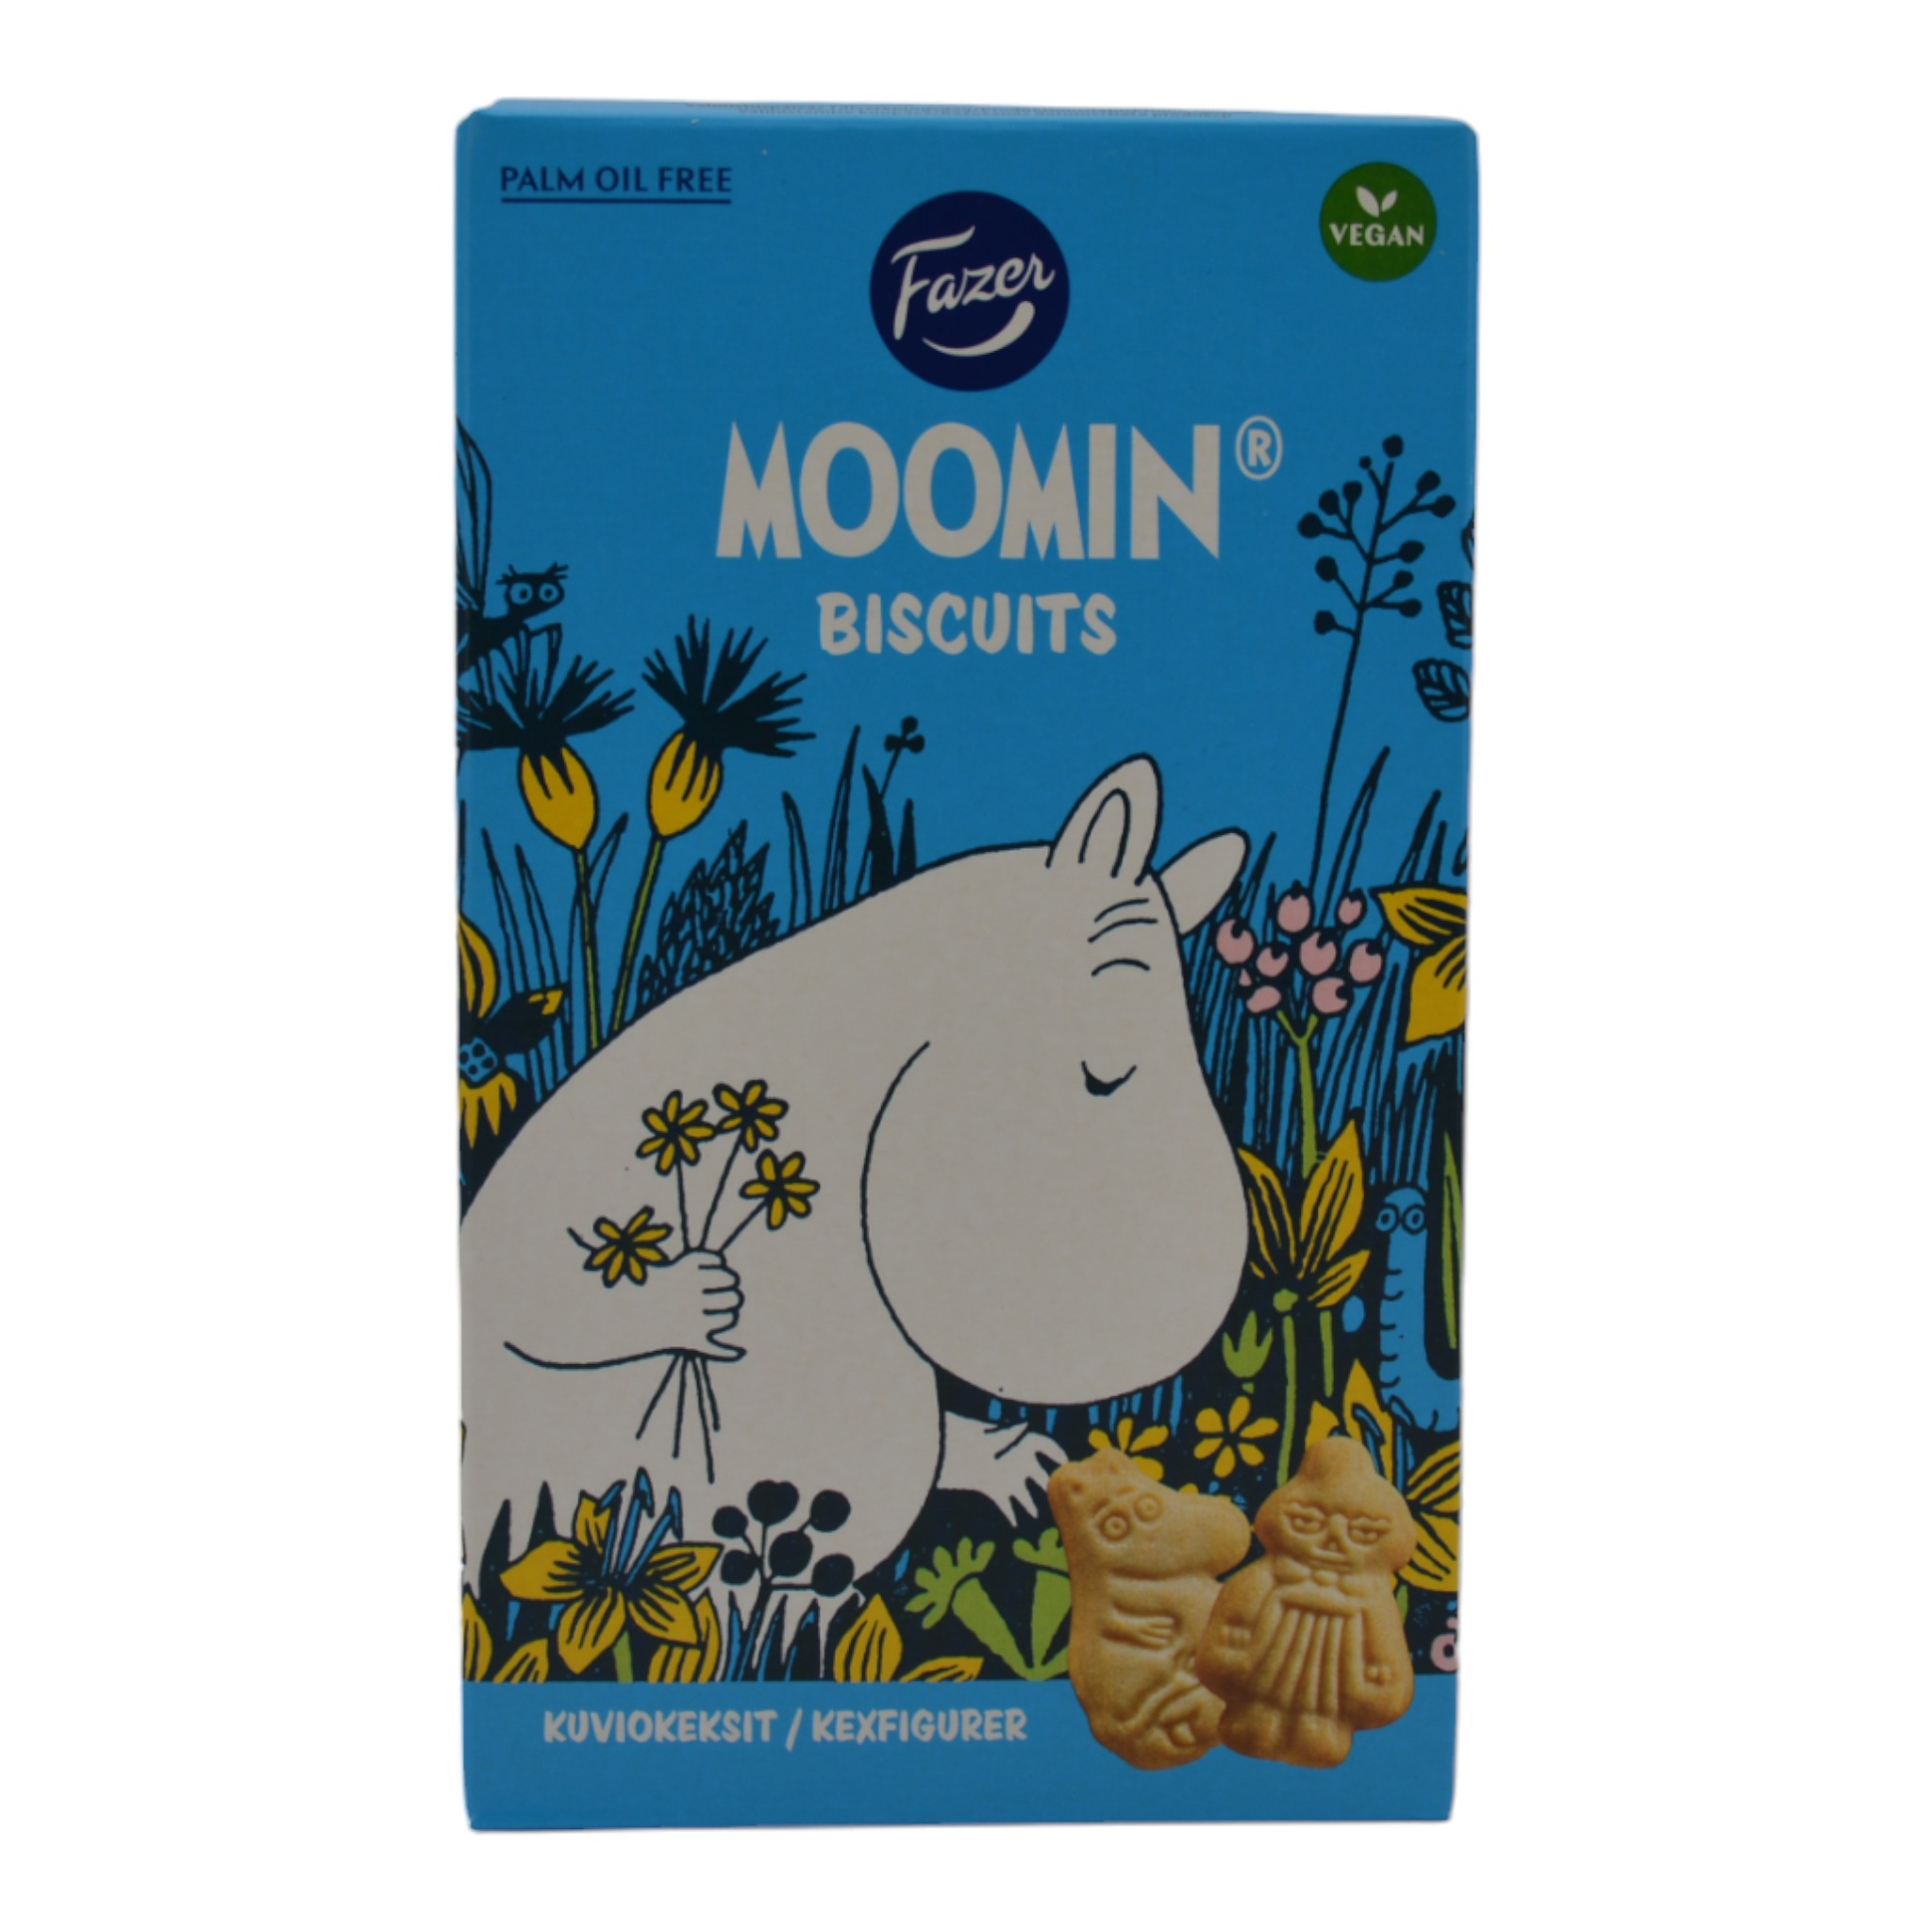 6411401085260Fazer Moomin Biscuits Vegan f